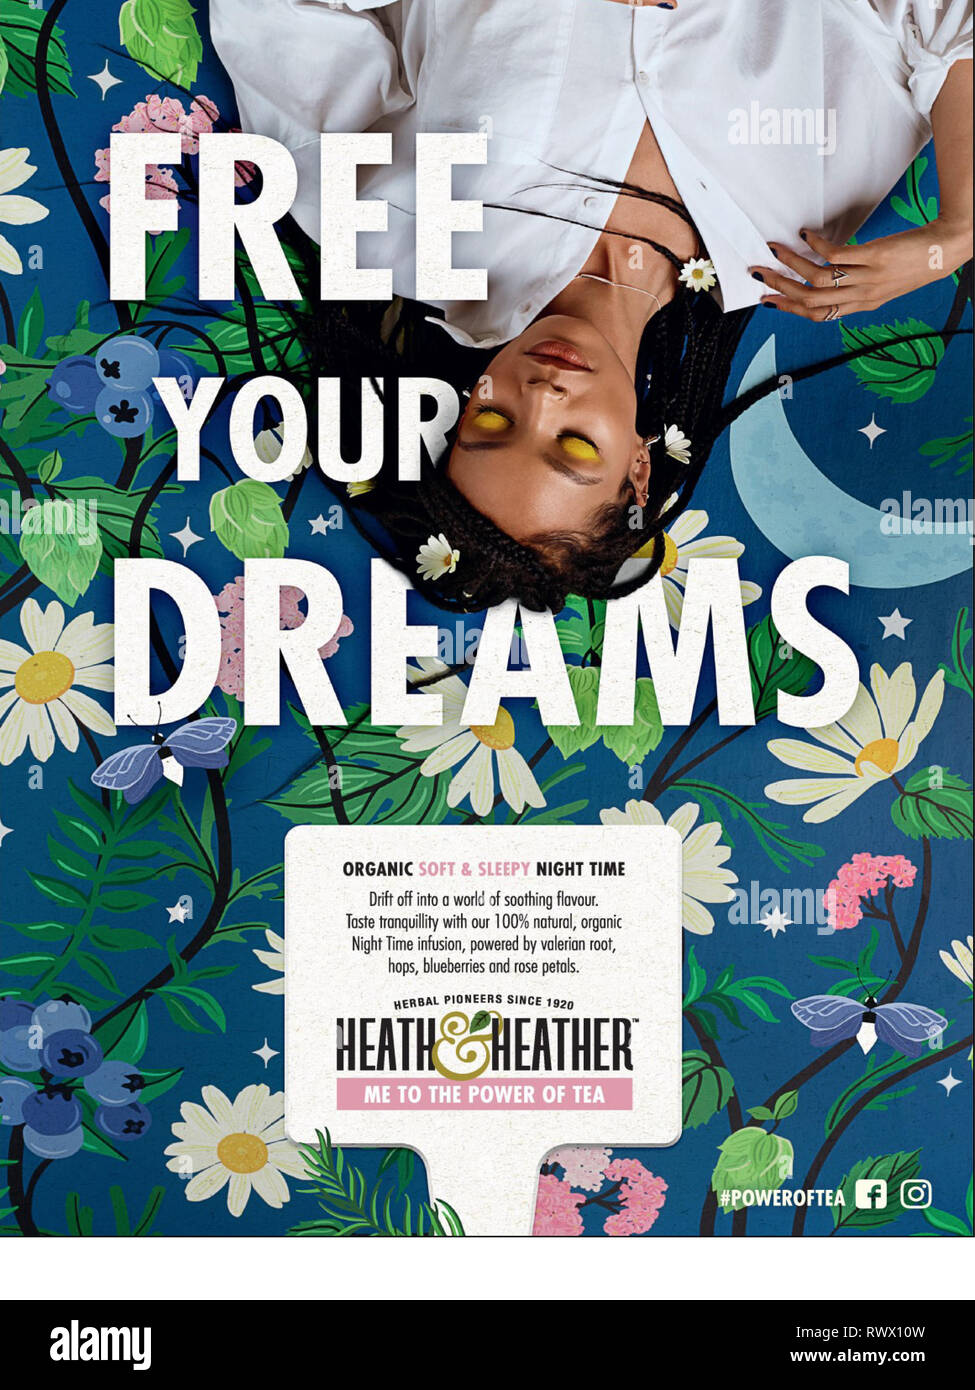 2010s UK Heath & Heather Magazine Advert Stock Photo